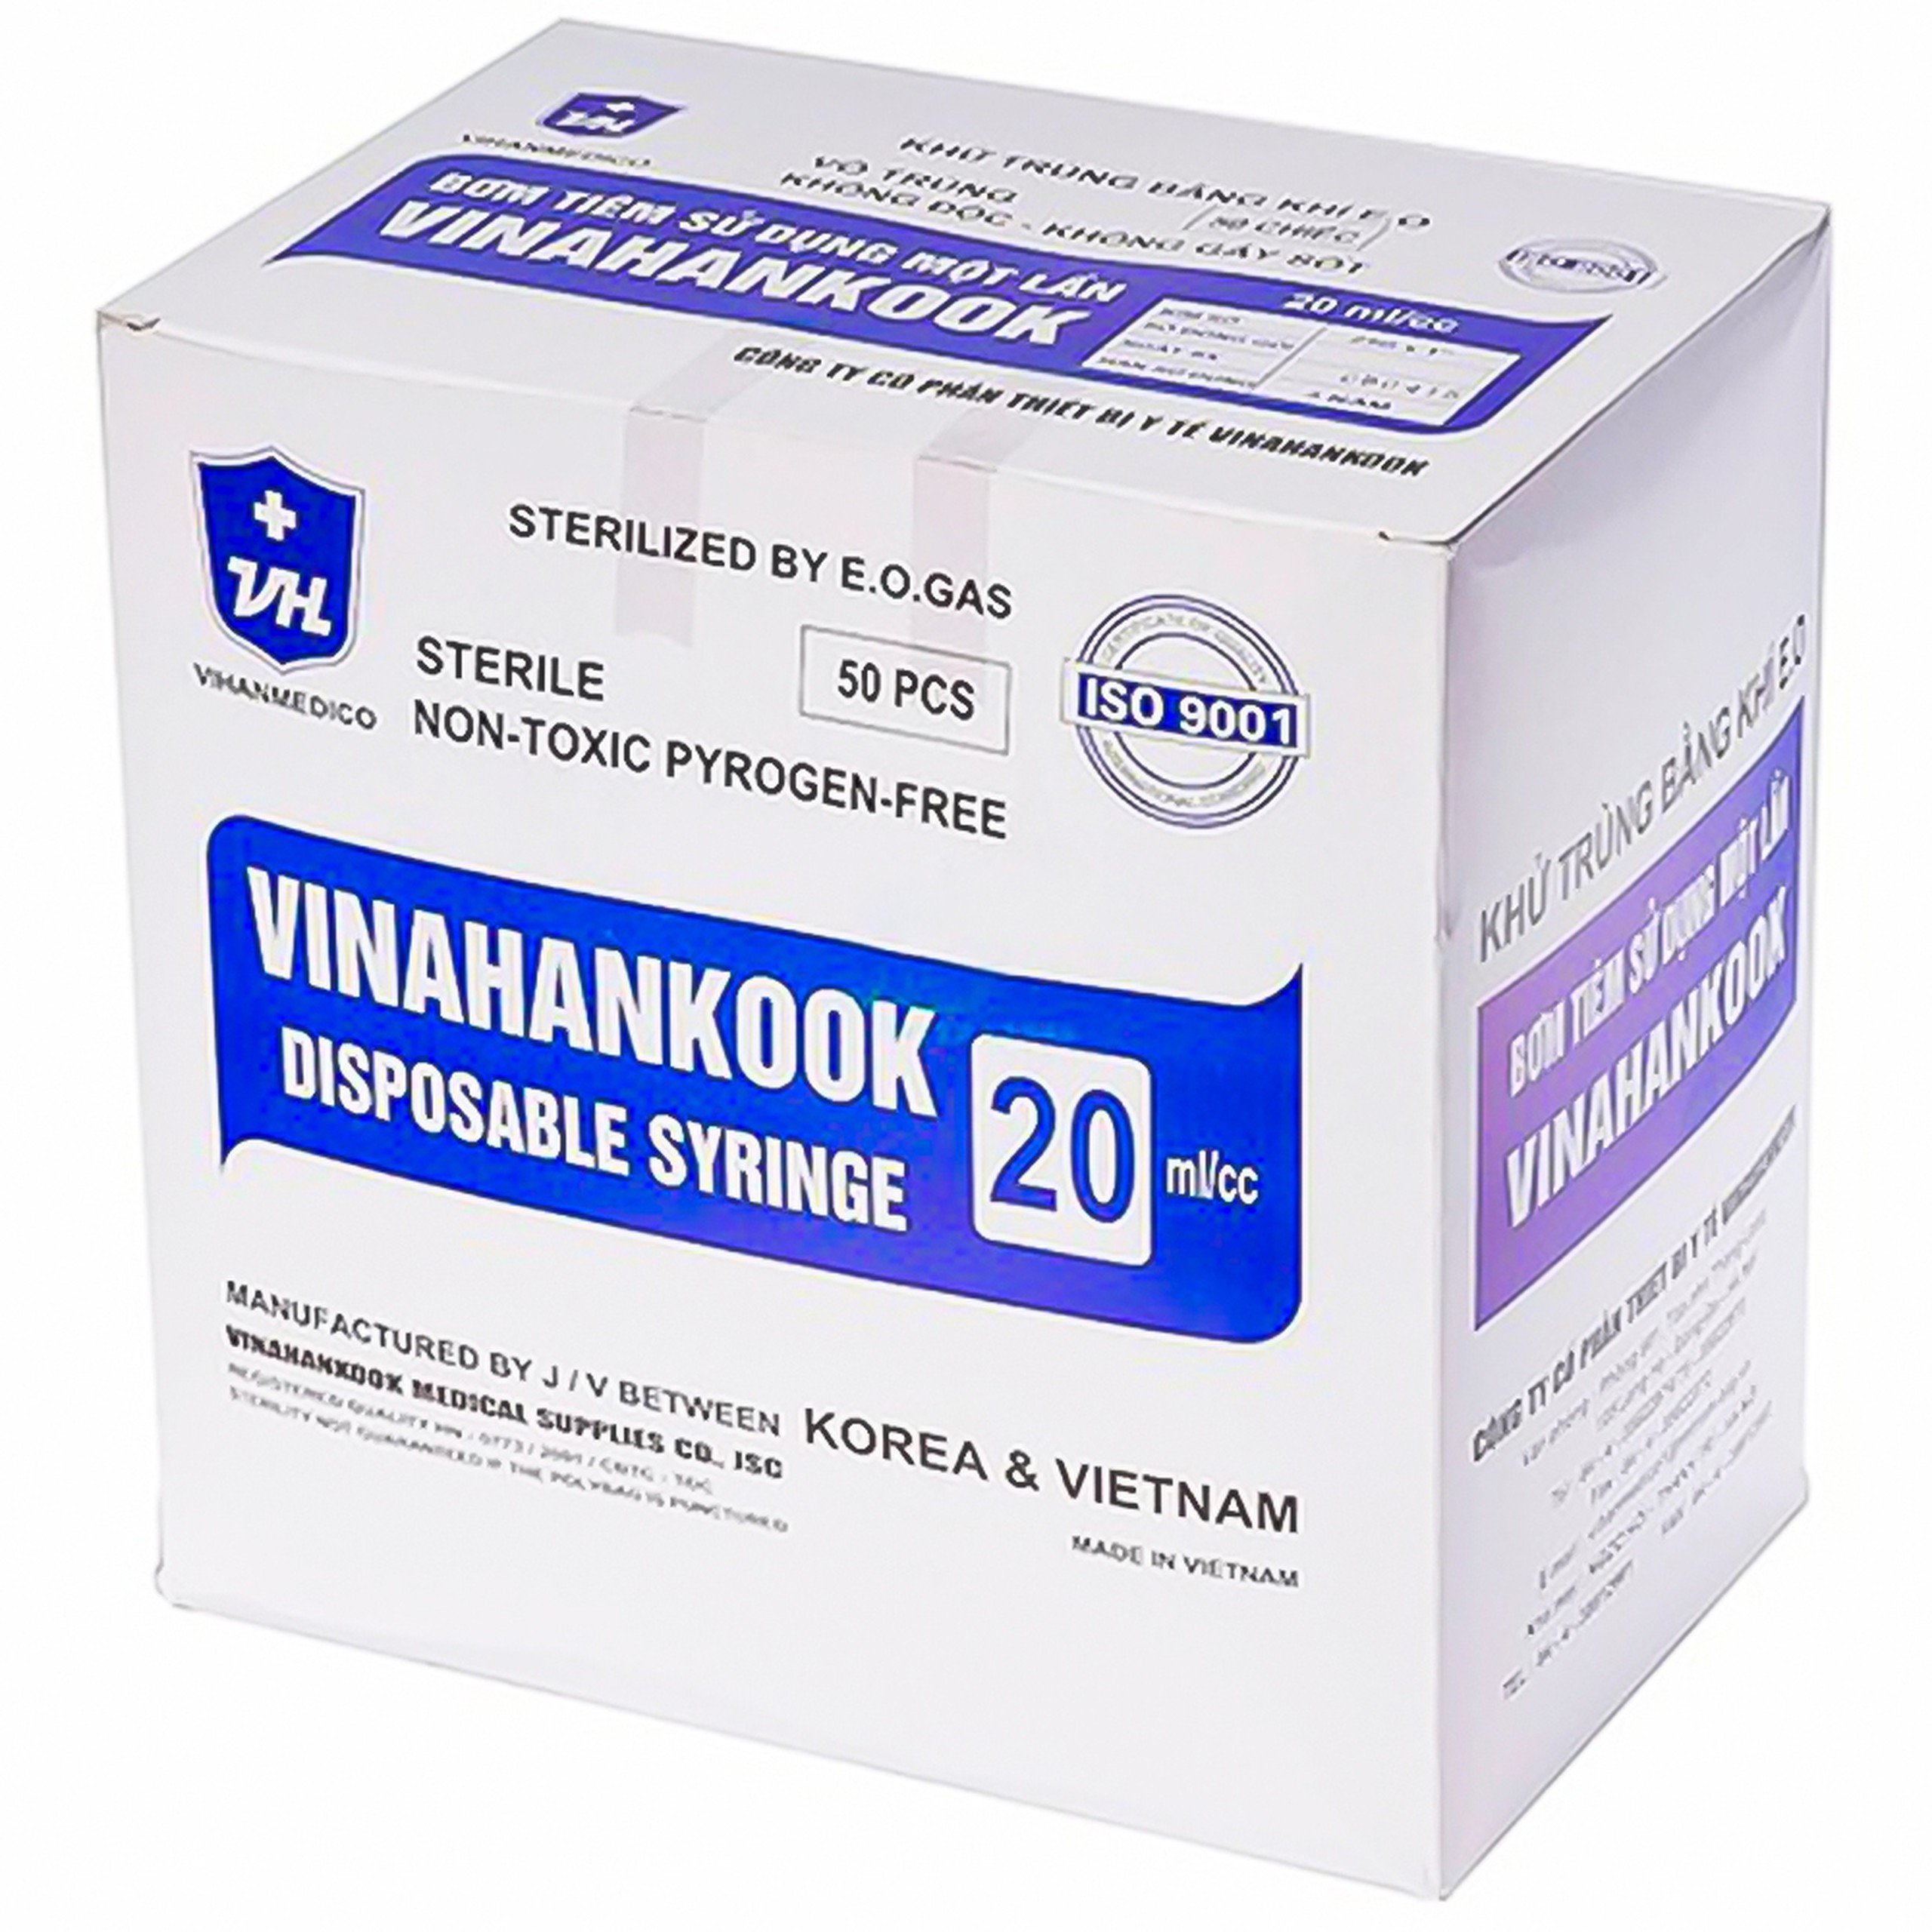 Bơm tiêm sử dụng một lần Vinahankook 20ml/cc được khử trùng bằng khí E.O (50 cái)